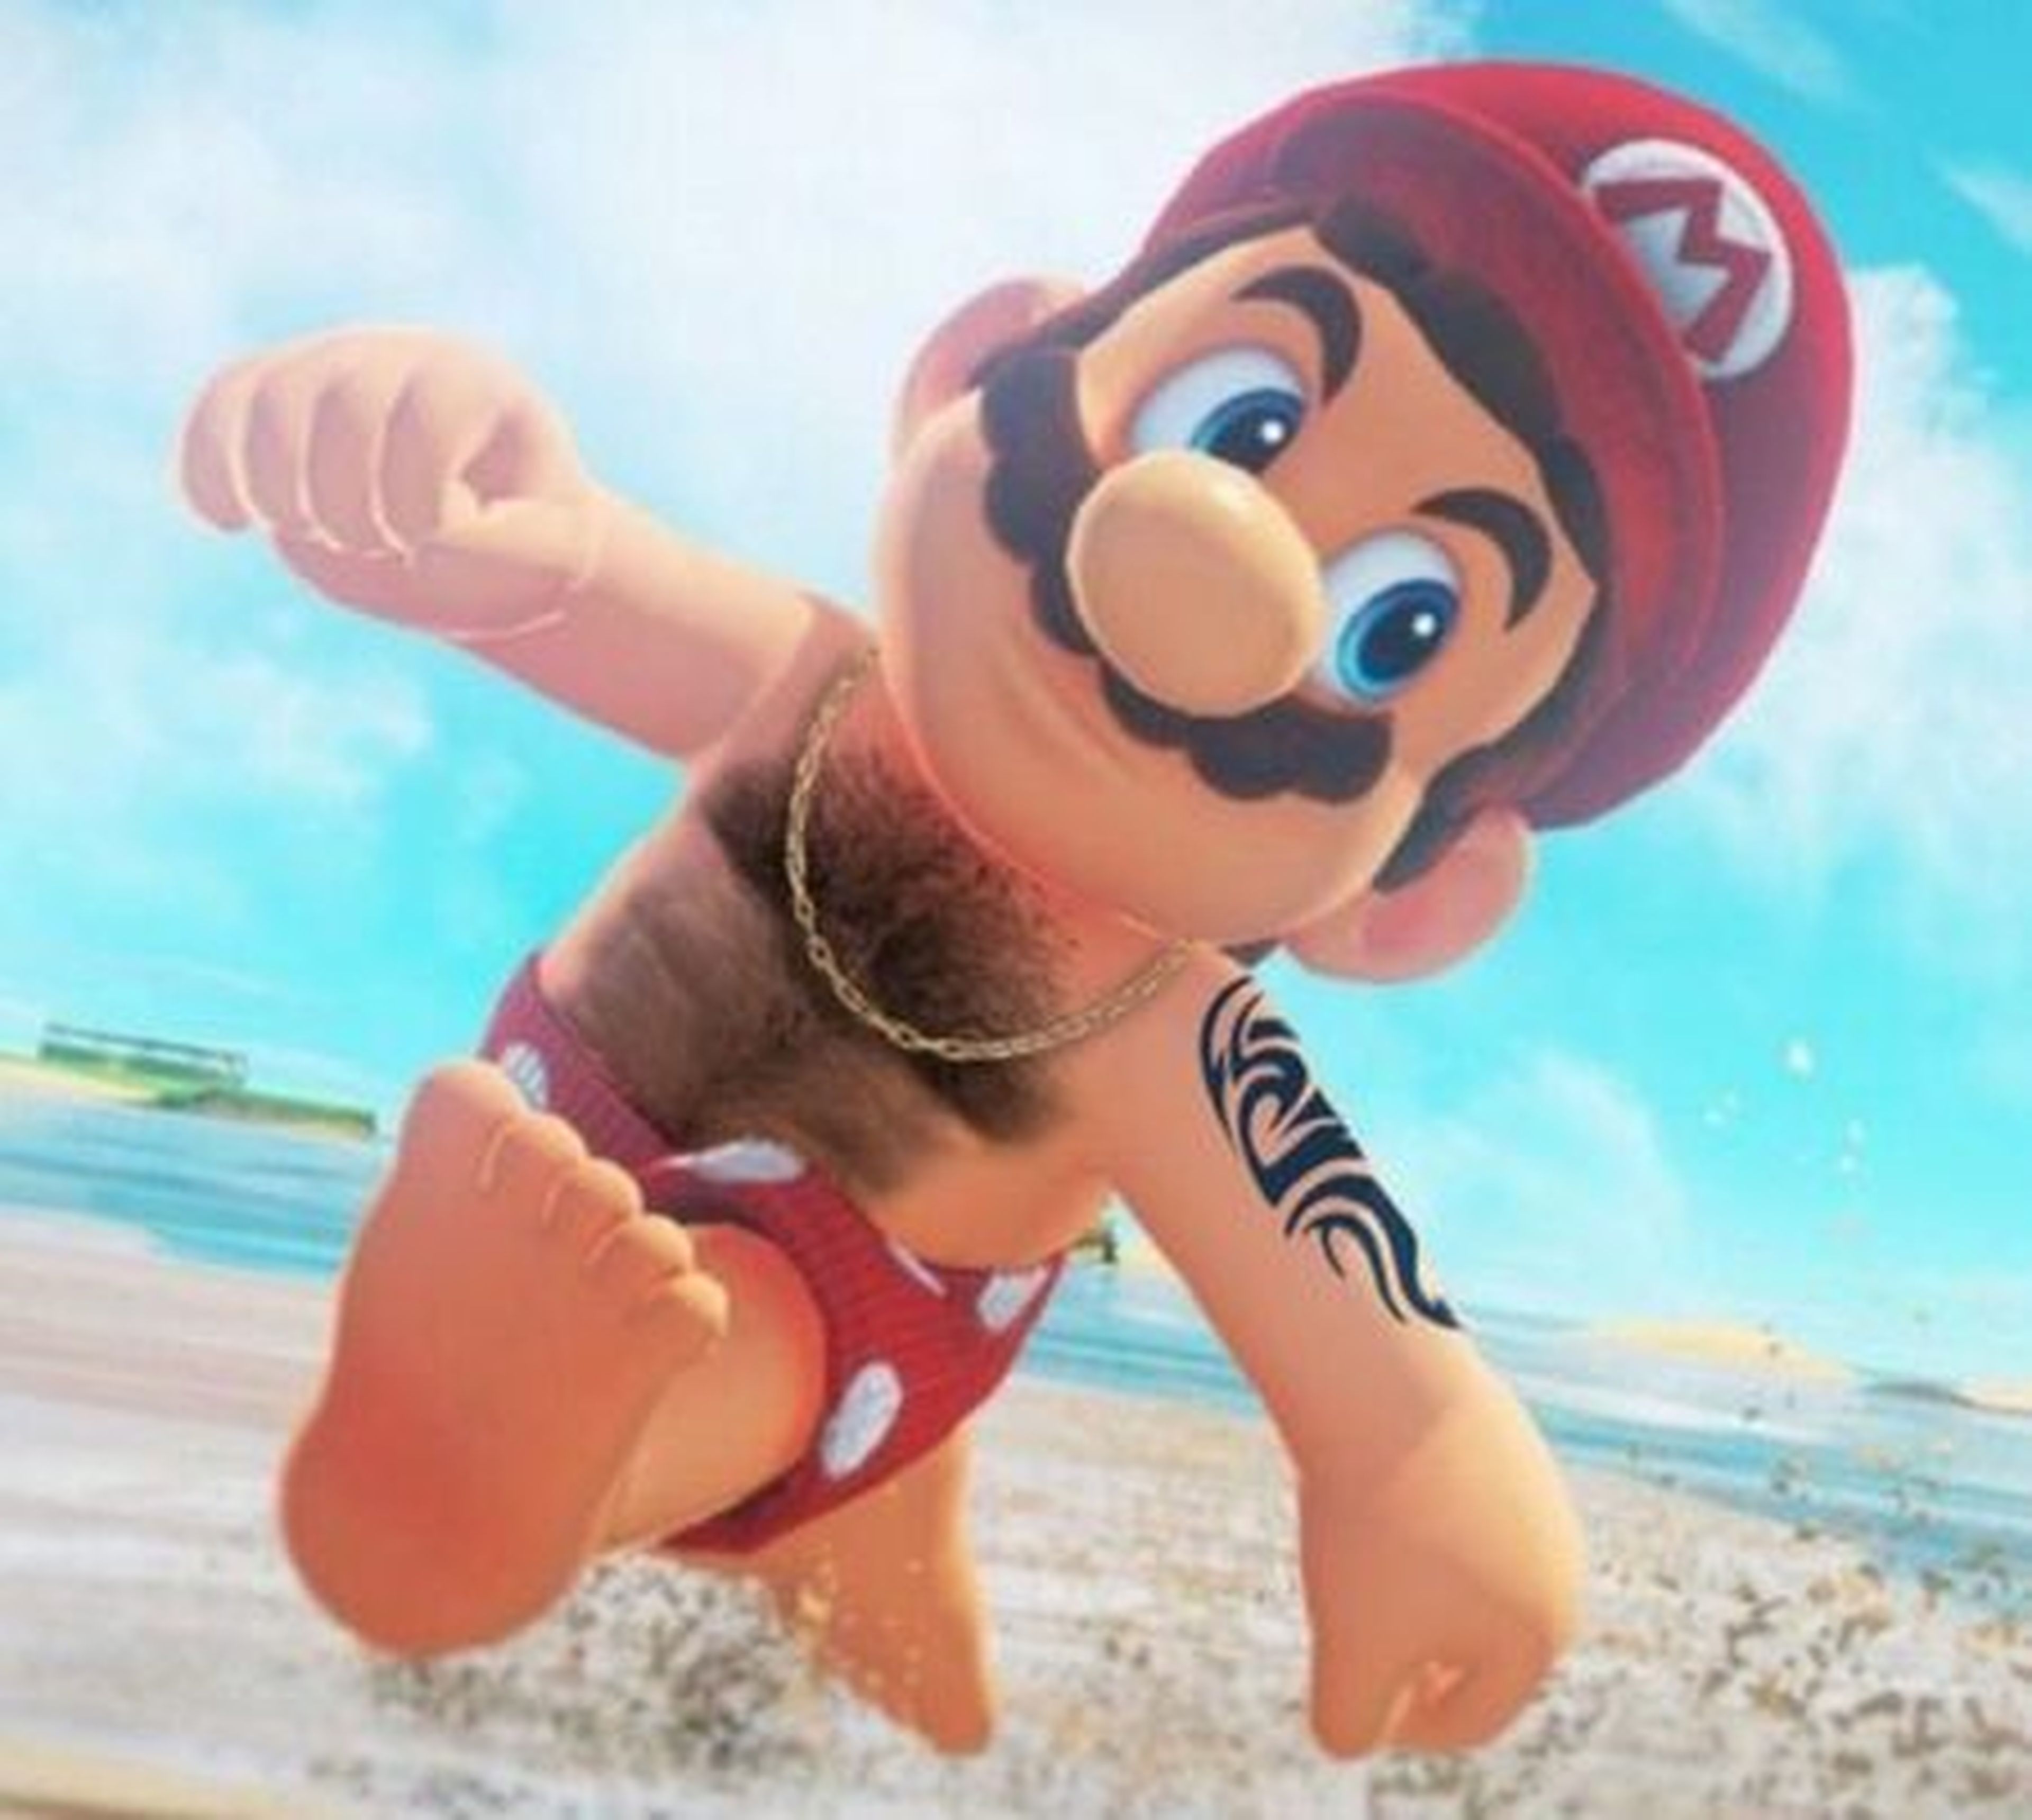 Los pezones de Mario son tendencia